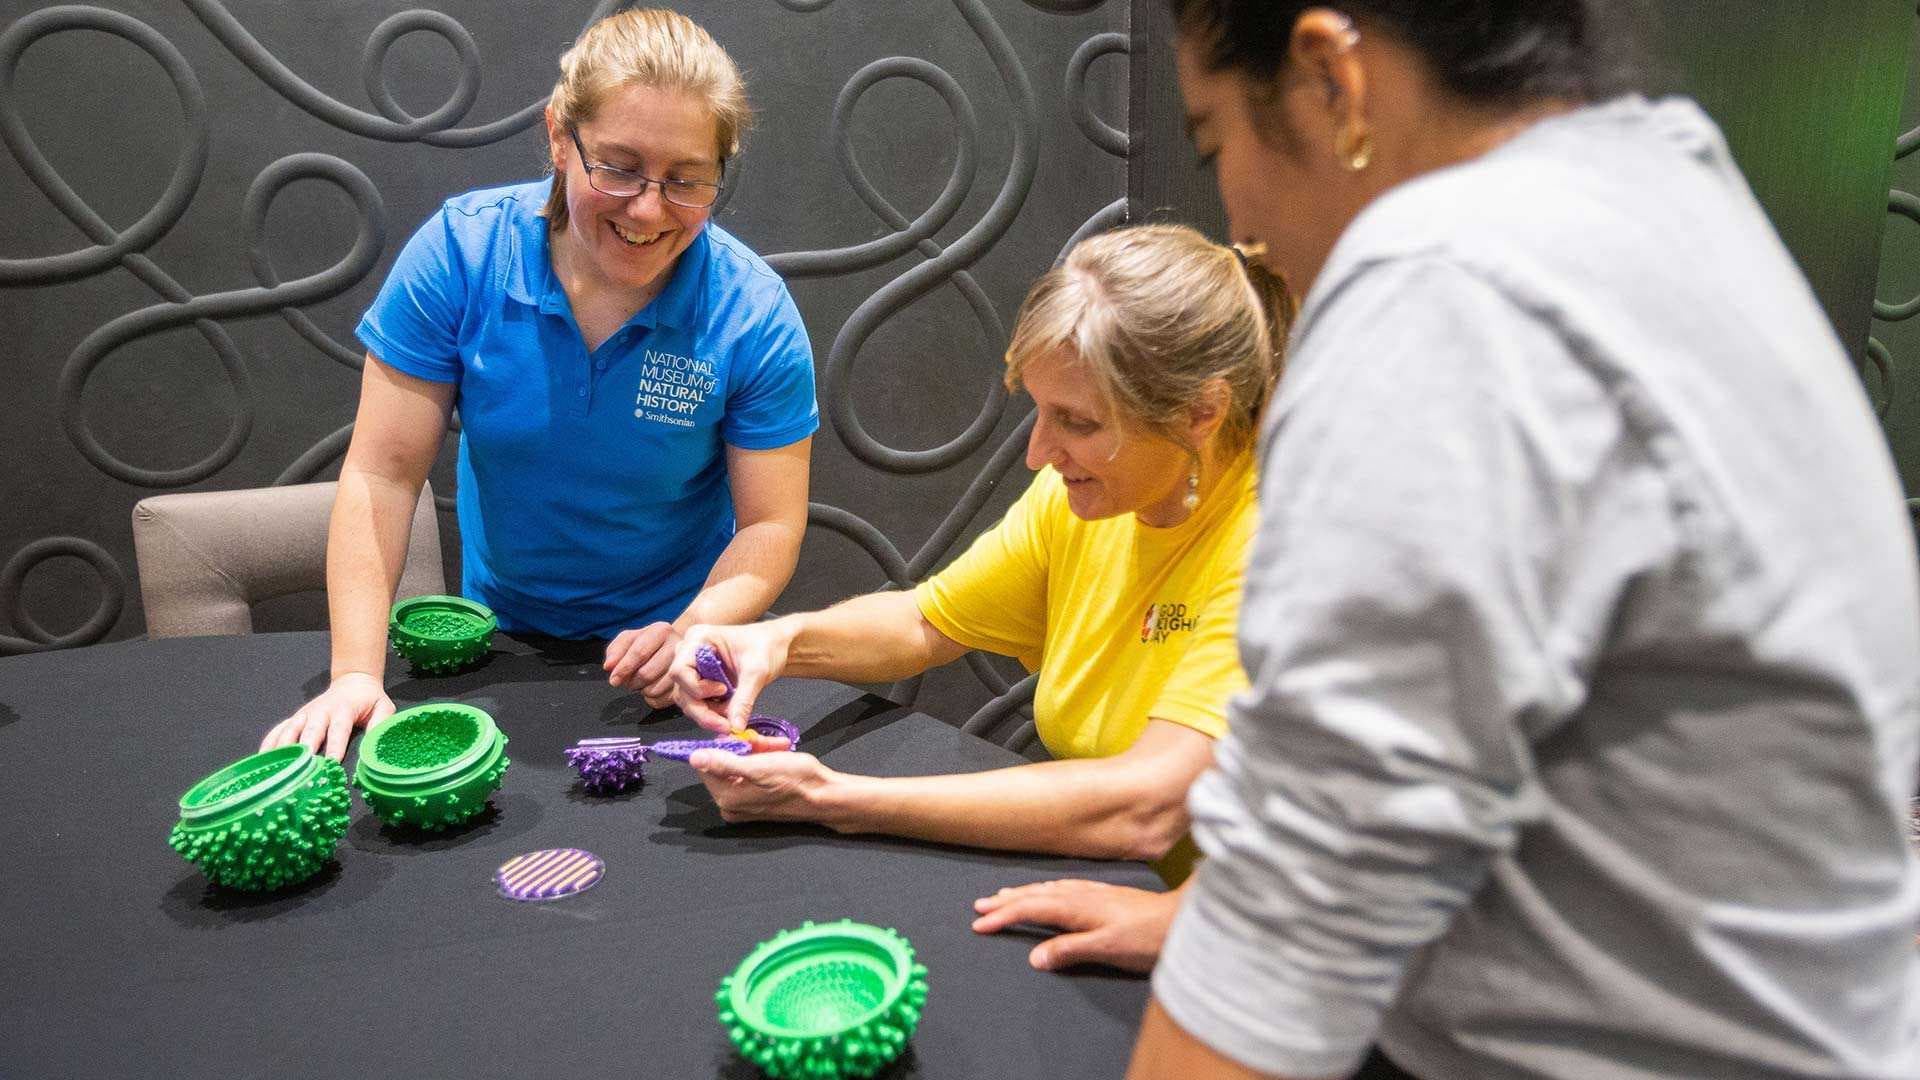 three women look at 3d printed virus models at a table